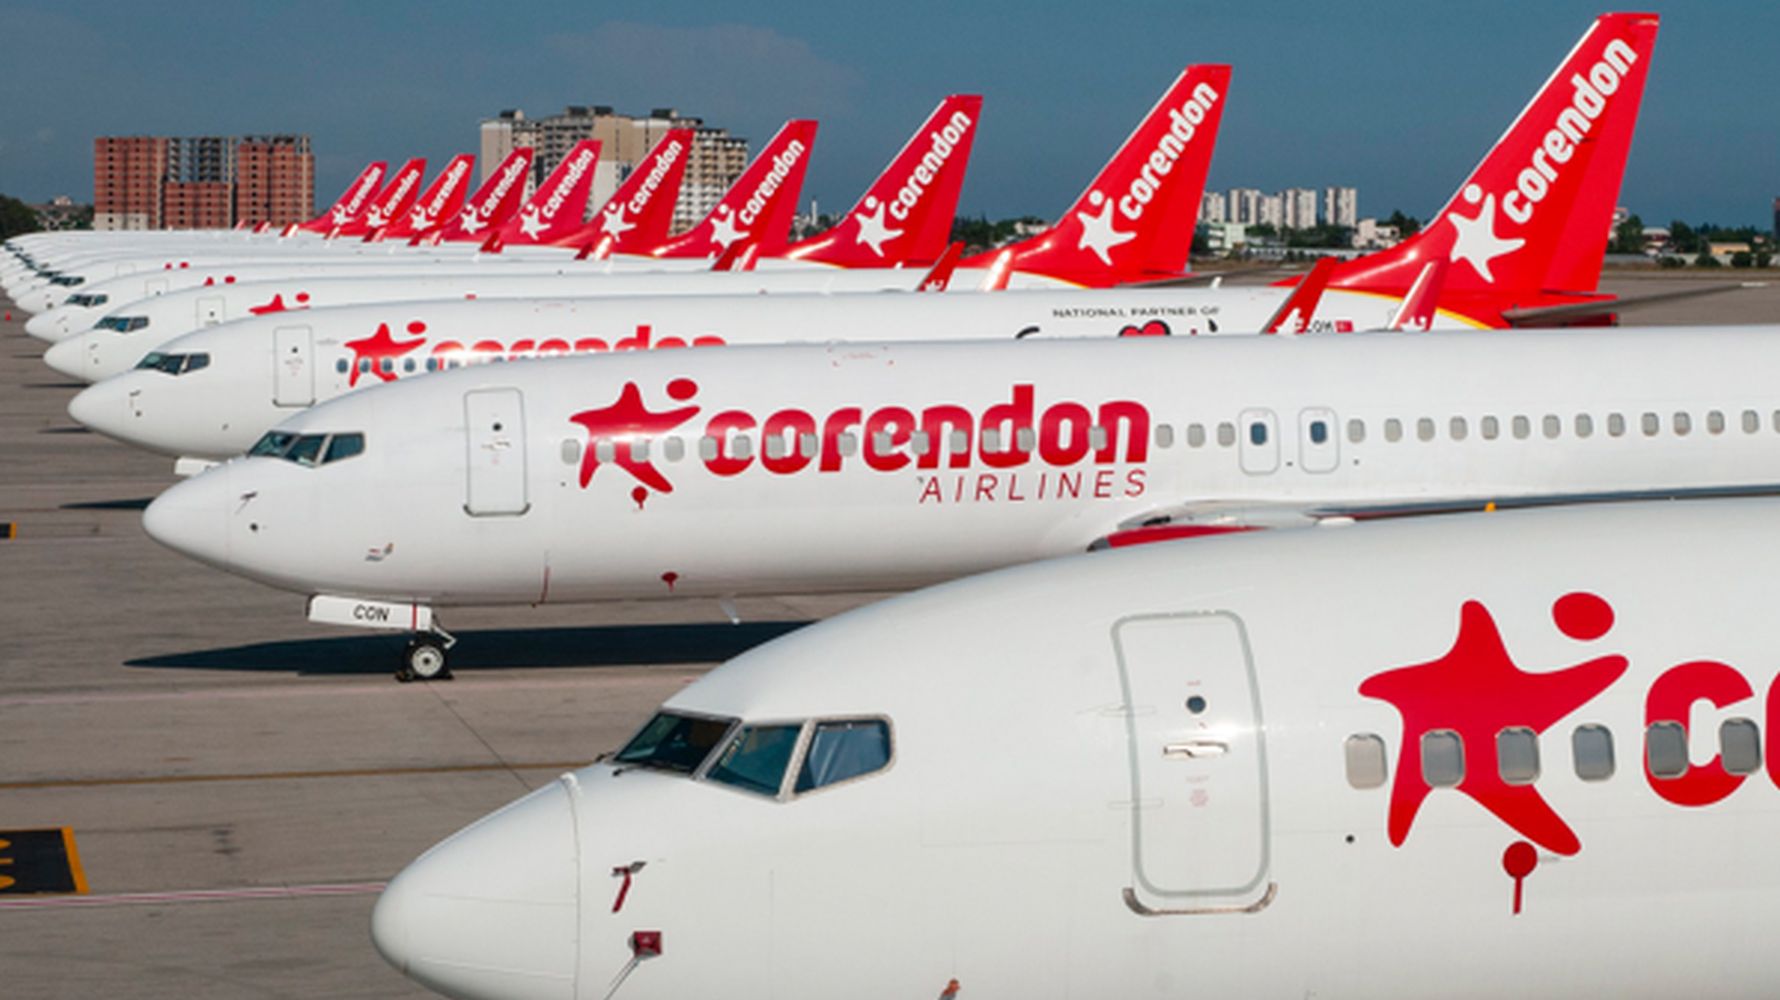 Corendon Airlines, uu an geniletmeye devam ediyor